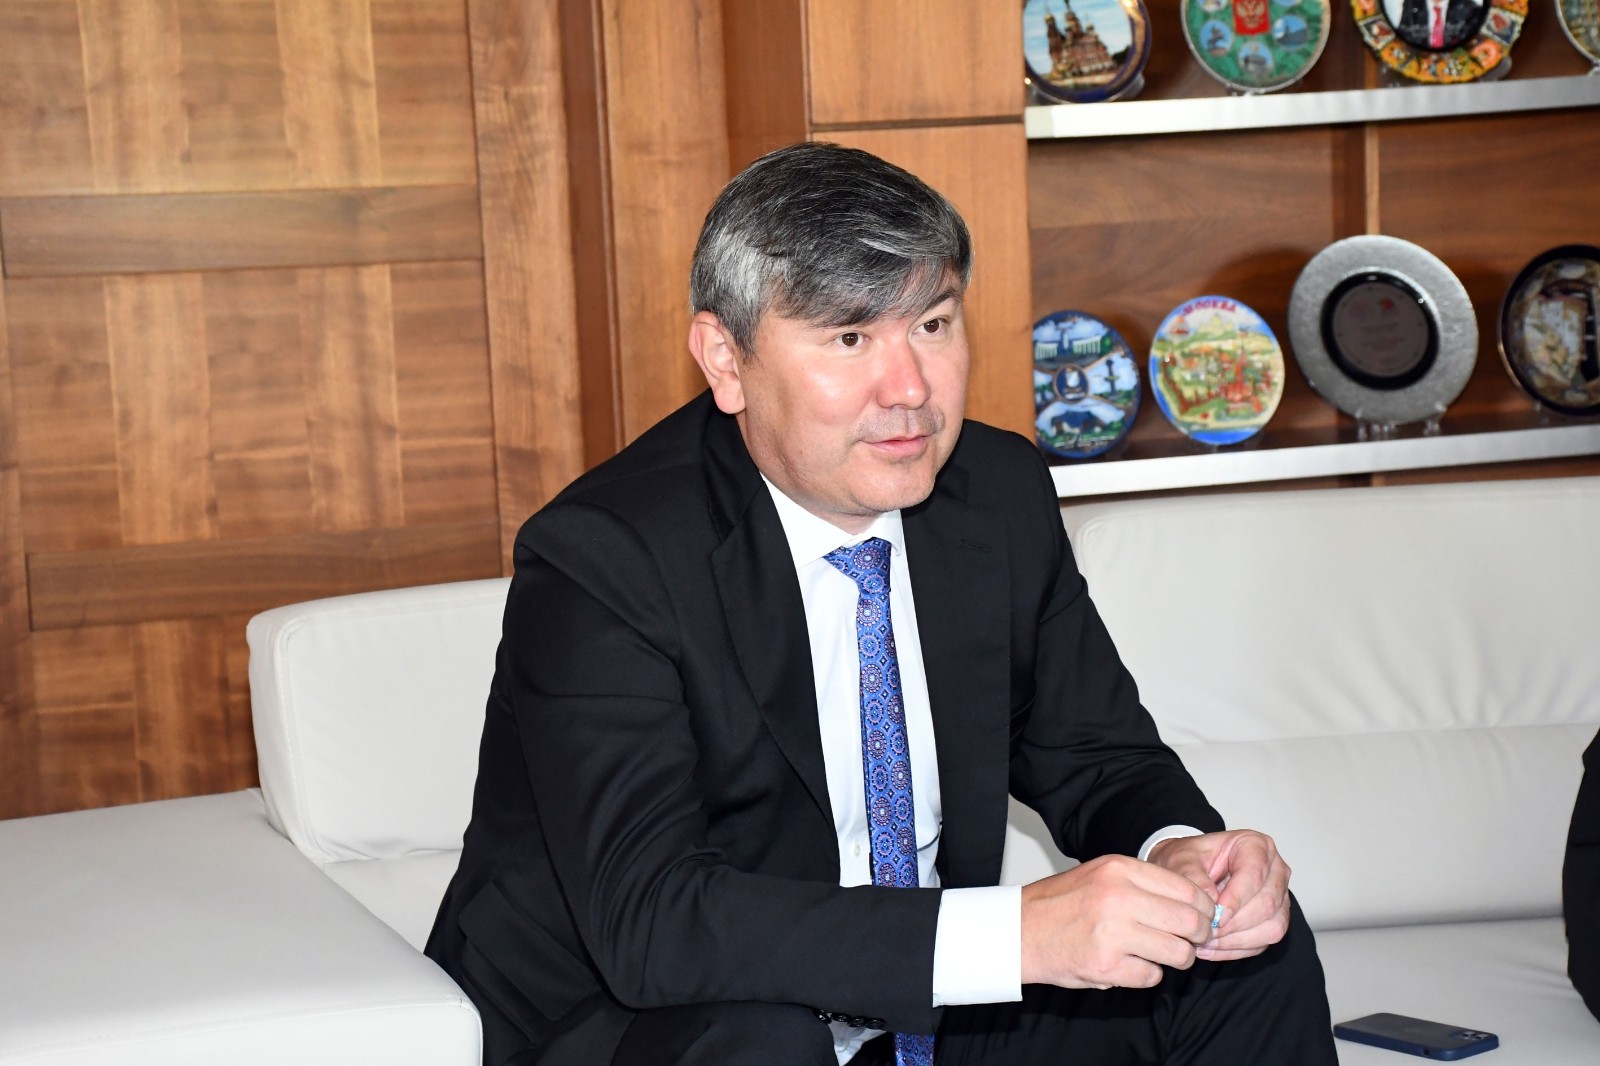 Kazakistan Büyükelçisi Saparbekuly: “Türkiye, Kazaklar için bir numaralı destinasyondur”